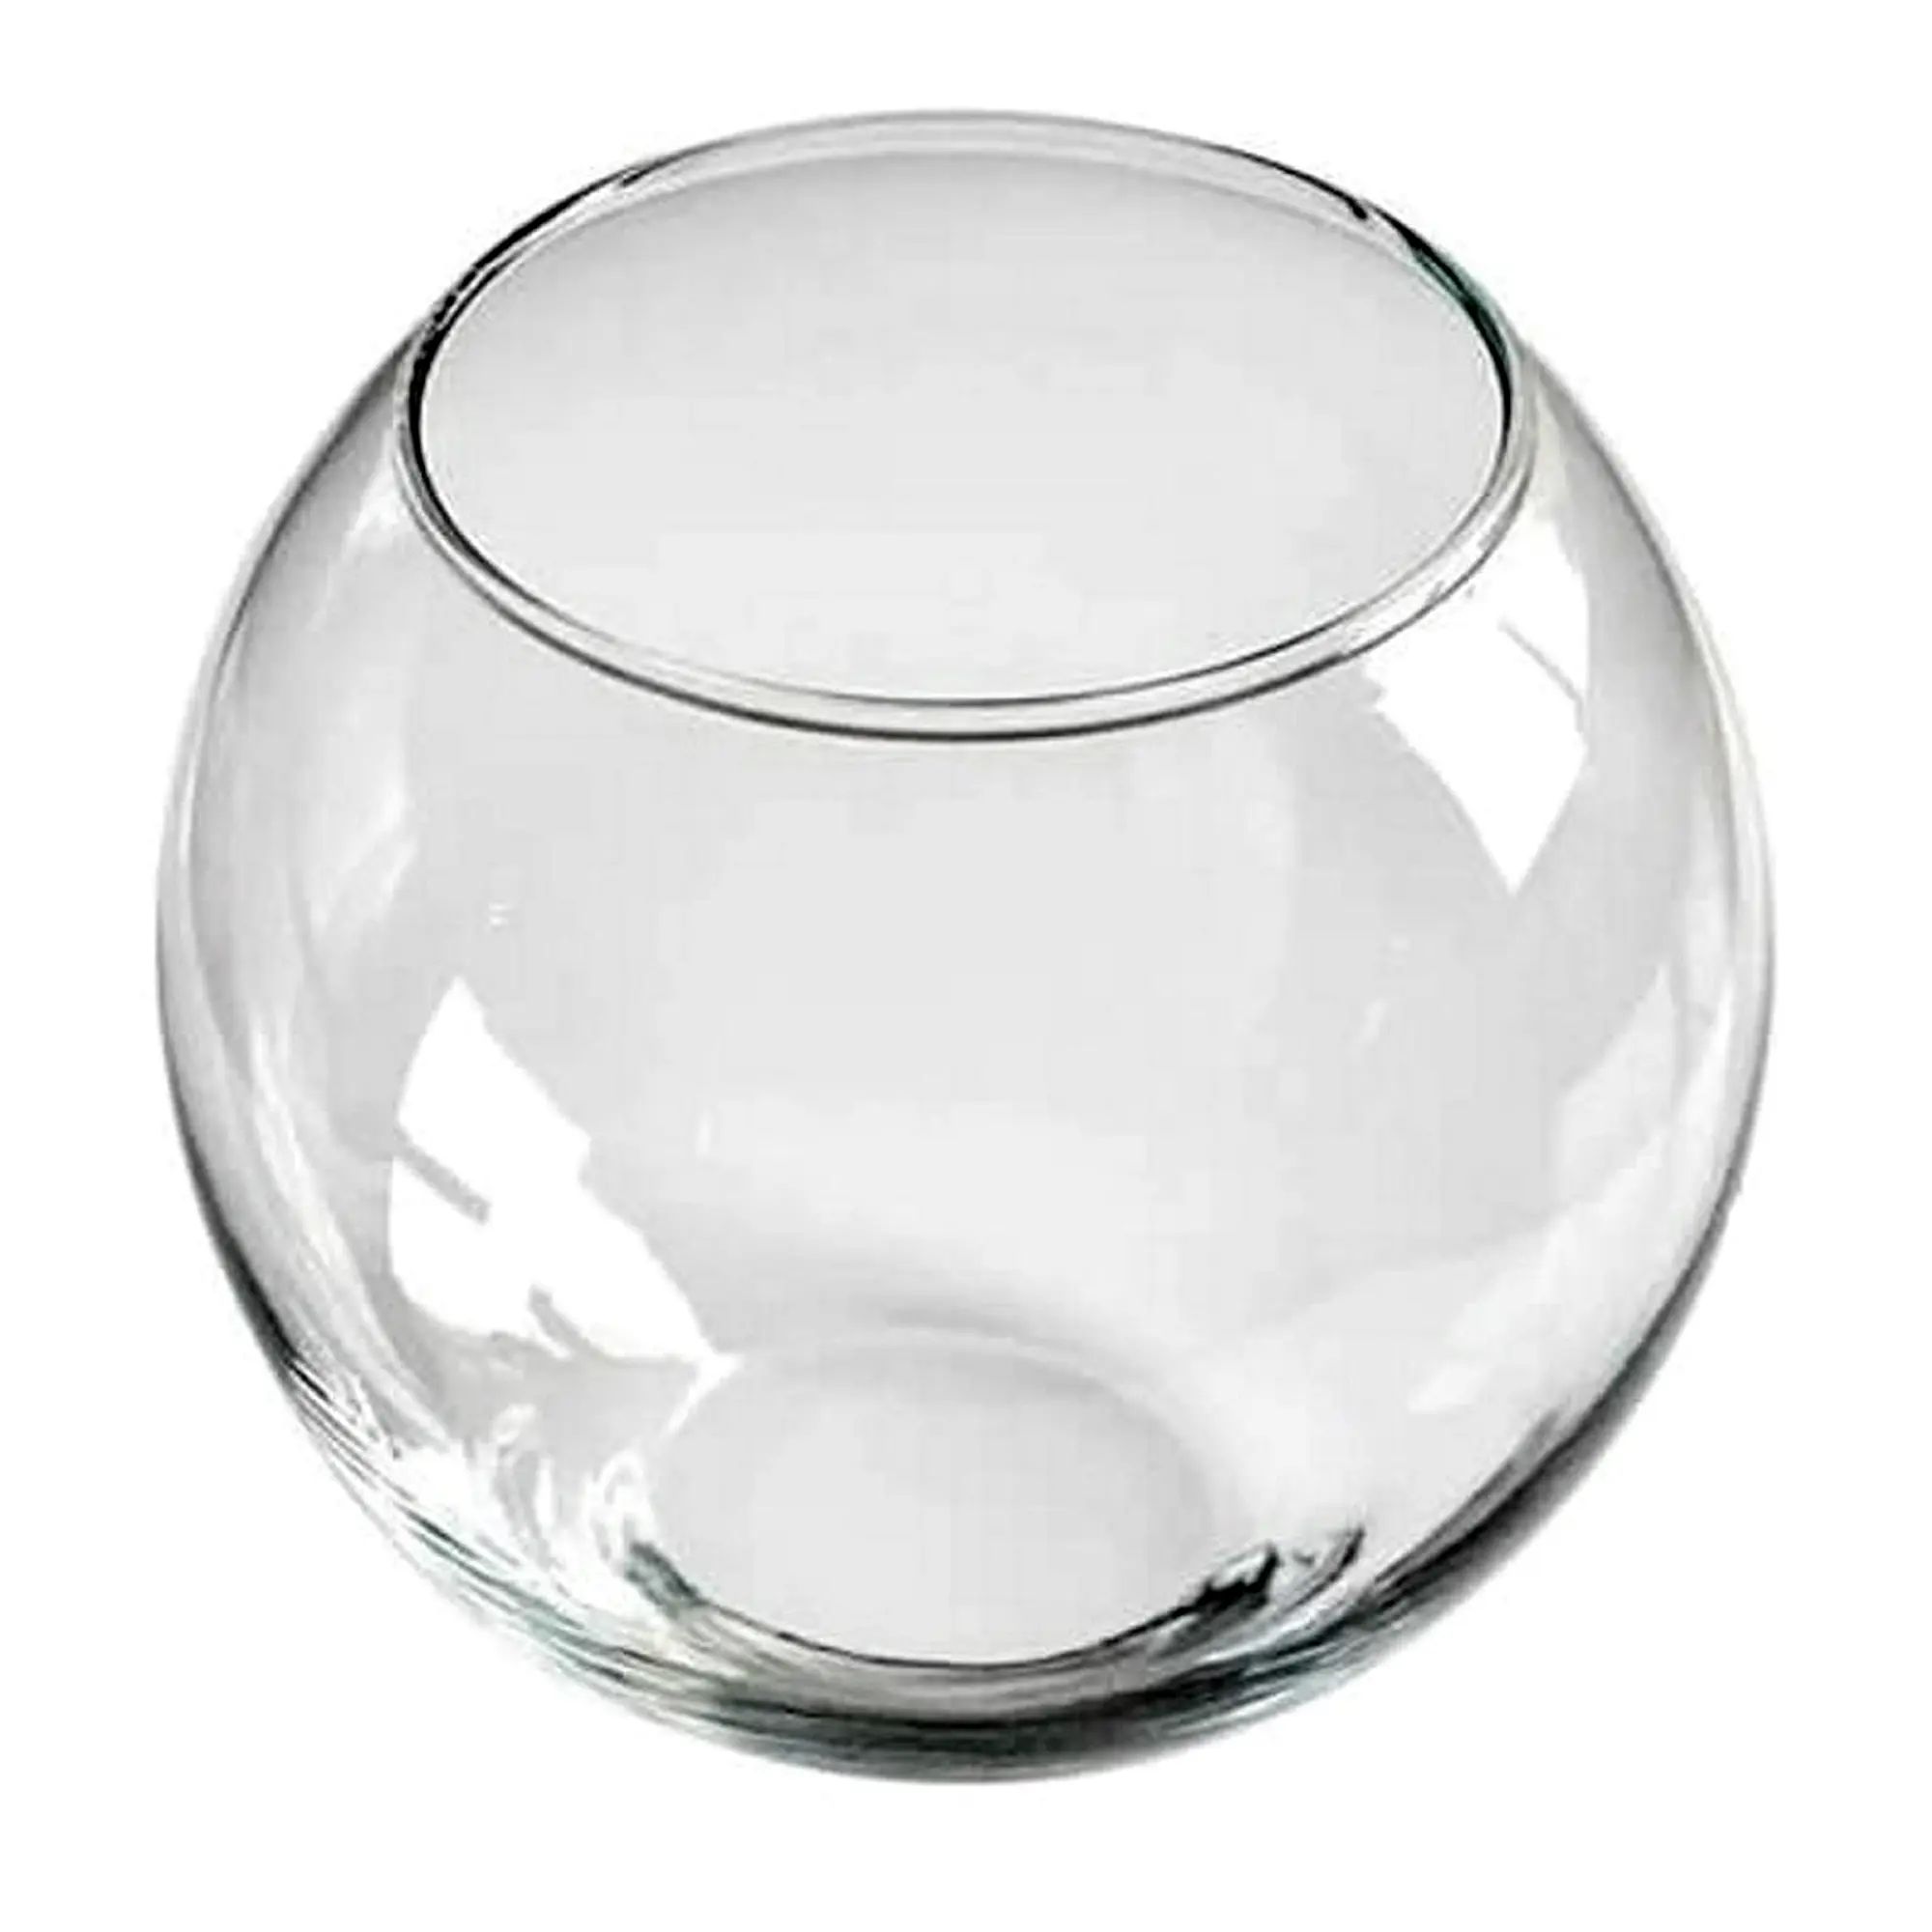 На столе шесть прозрачных ваз под какой цифрой стоит пустая ваза